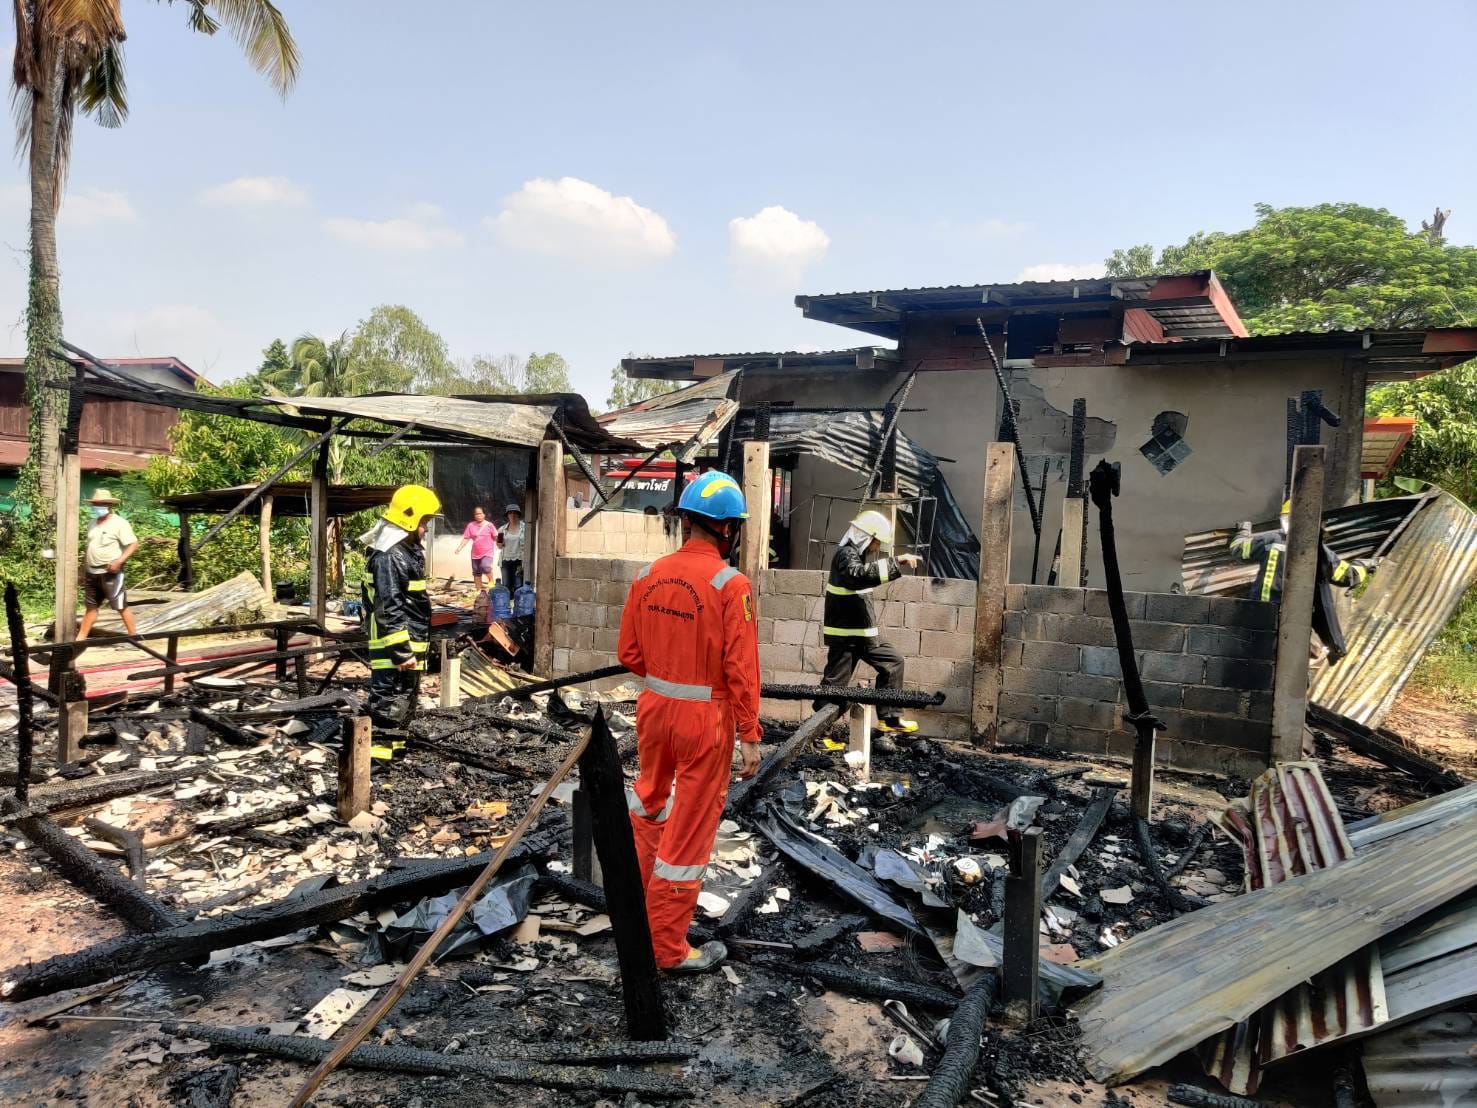 เมื่อวันที่ 22 พฤษภาคม 2566 งานป้องและบรรเทาสาธารภัย ได้รับแจ้งเหตุจาก อบต.นาโพธิ์ ว่าได้เกิดเหตุเพลิงไหม้บ้านเรือนประชาชนในพื้นที่ บ้านหนองหลุบ เจ้าหน้าที่พร้อมทีมงานป้องกันฯ จึงได้นำรถน้ำเพื่อเข้าระงับเหตุเพลิงไหม้ดังกล่าวไว้ได้